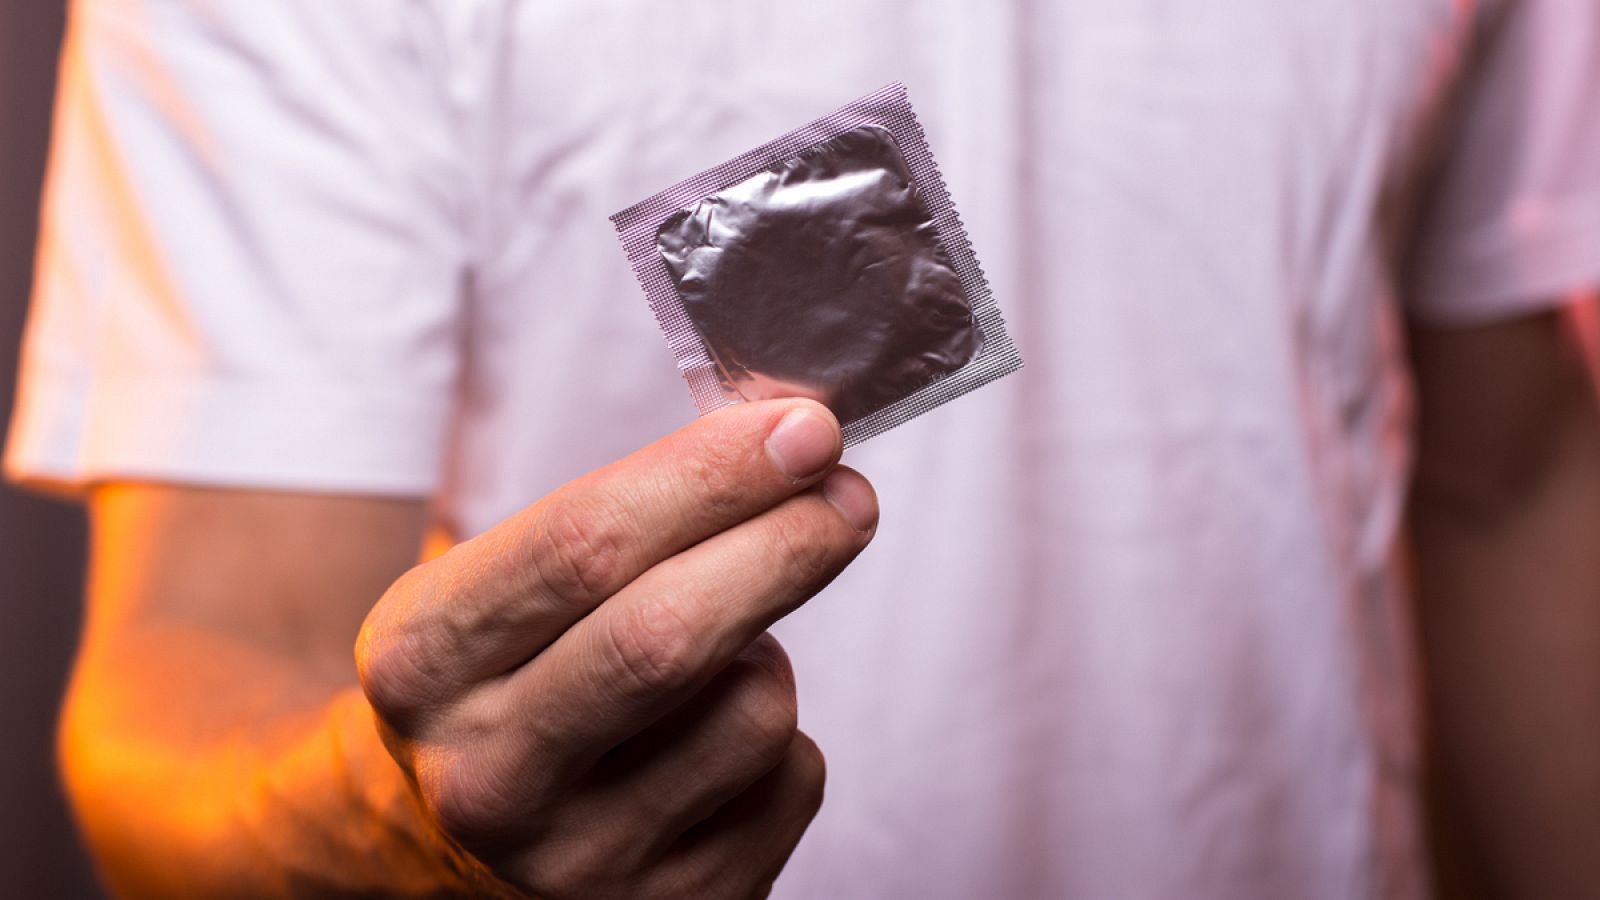 El 40% de las chicas y el 30% de los chicos europeos no usan preservativo en sus relaciones sexuales